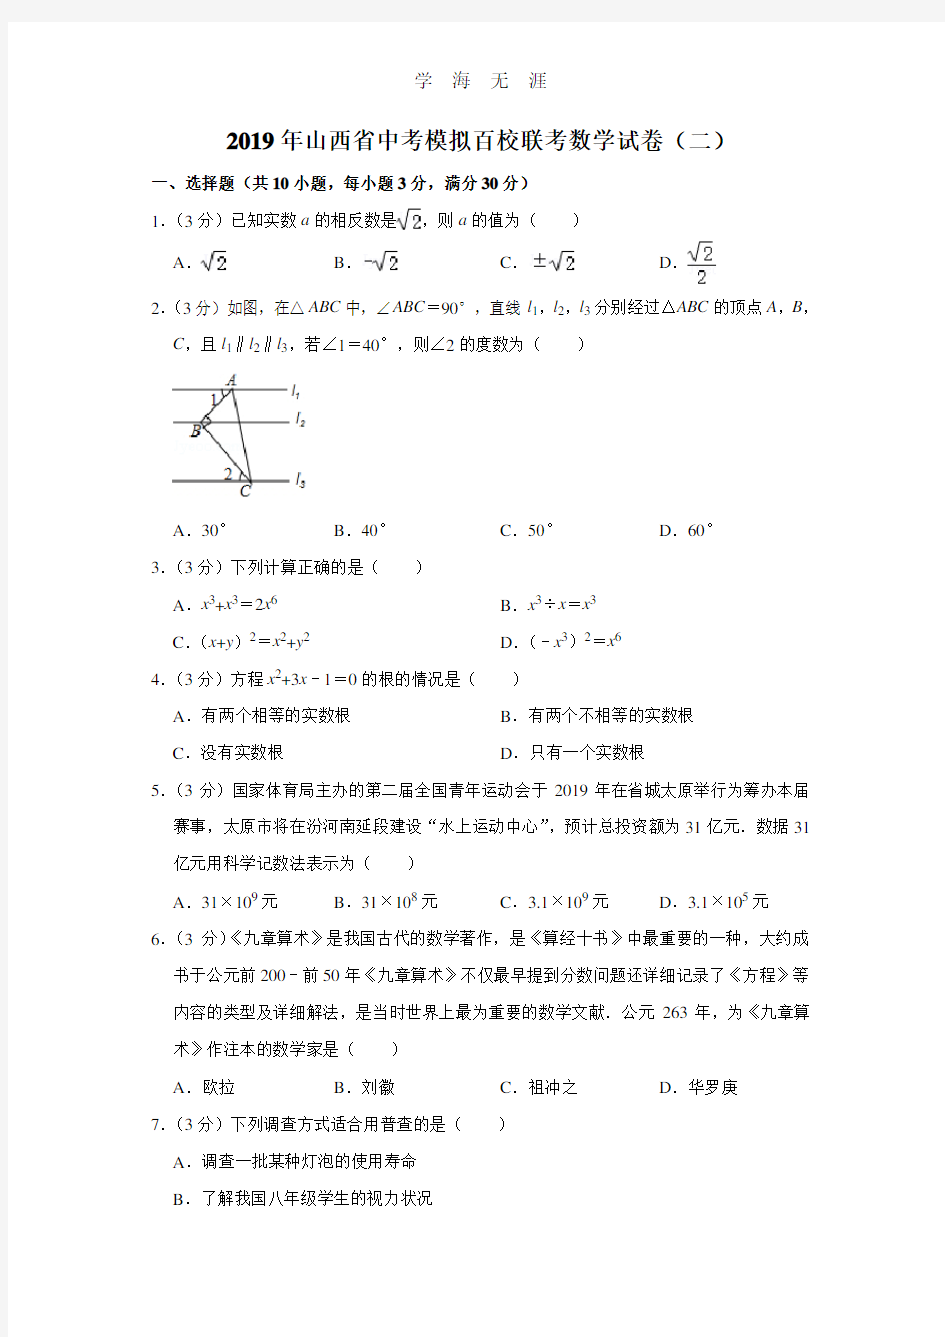 山西省中考模拟百校联考数学试卷(二)(2020年整理).doc